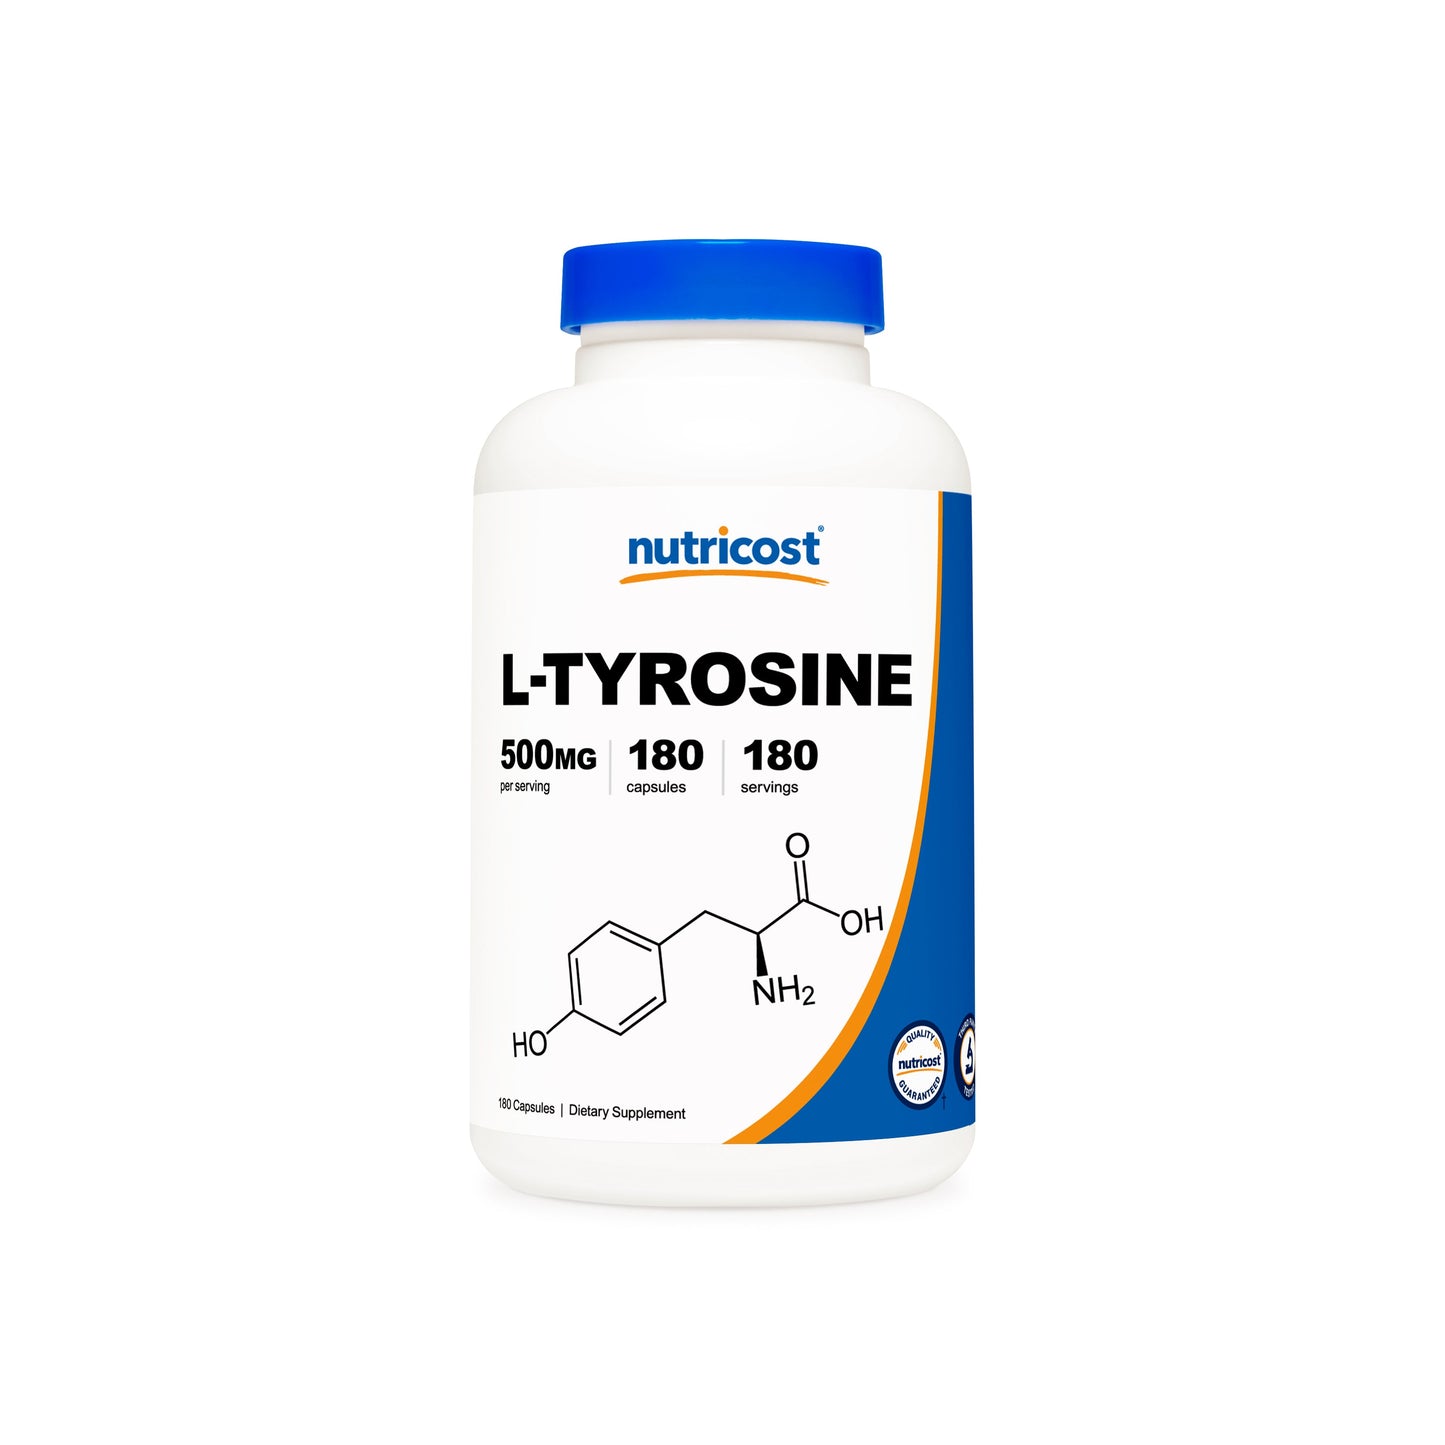 Nutricost L-Tyrosine Capsules